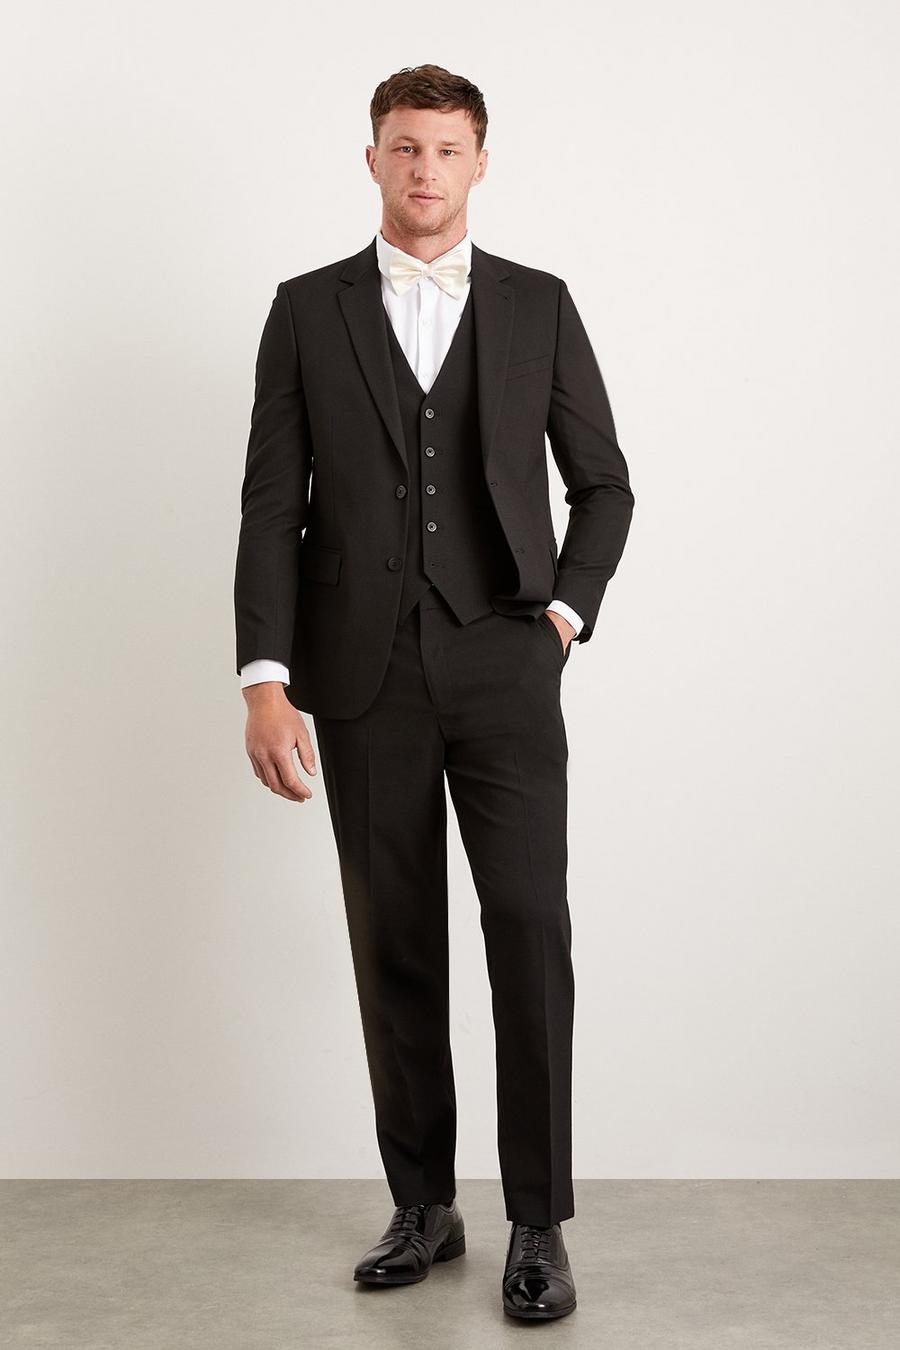 Tailored Black Essential Suit Blazer